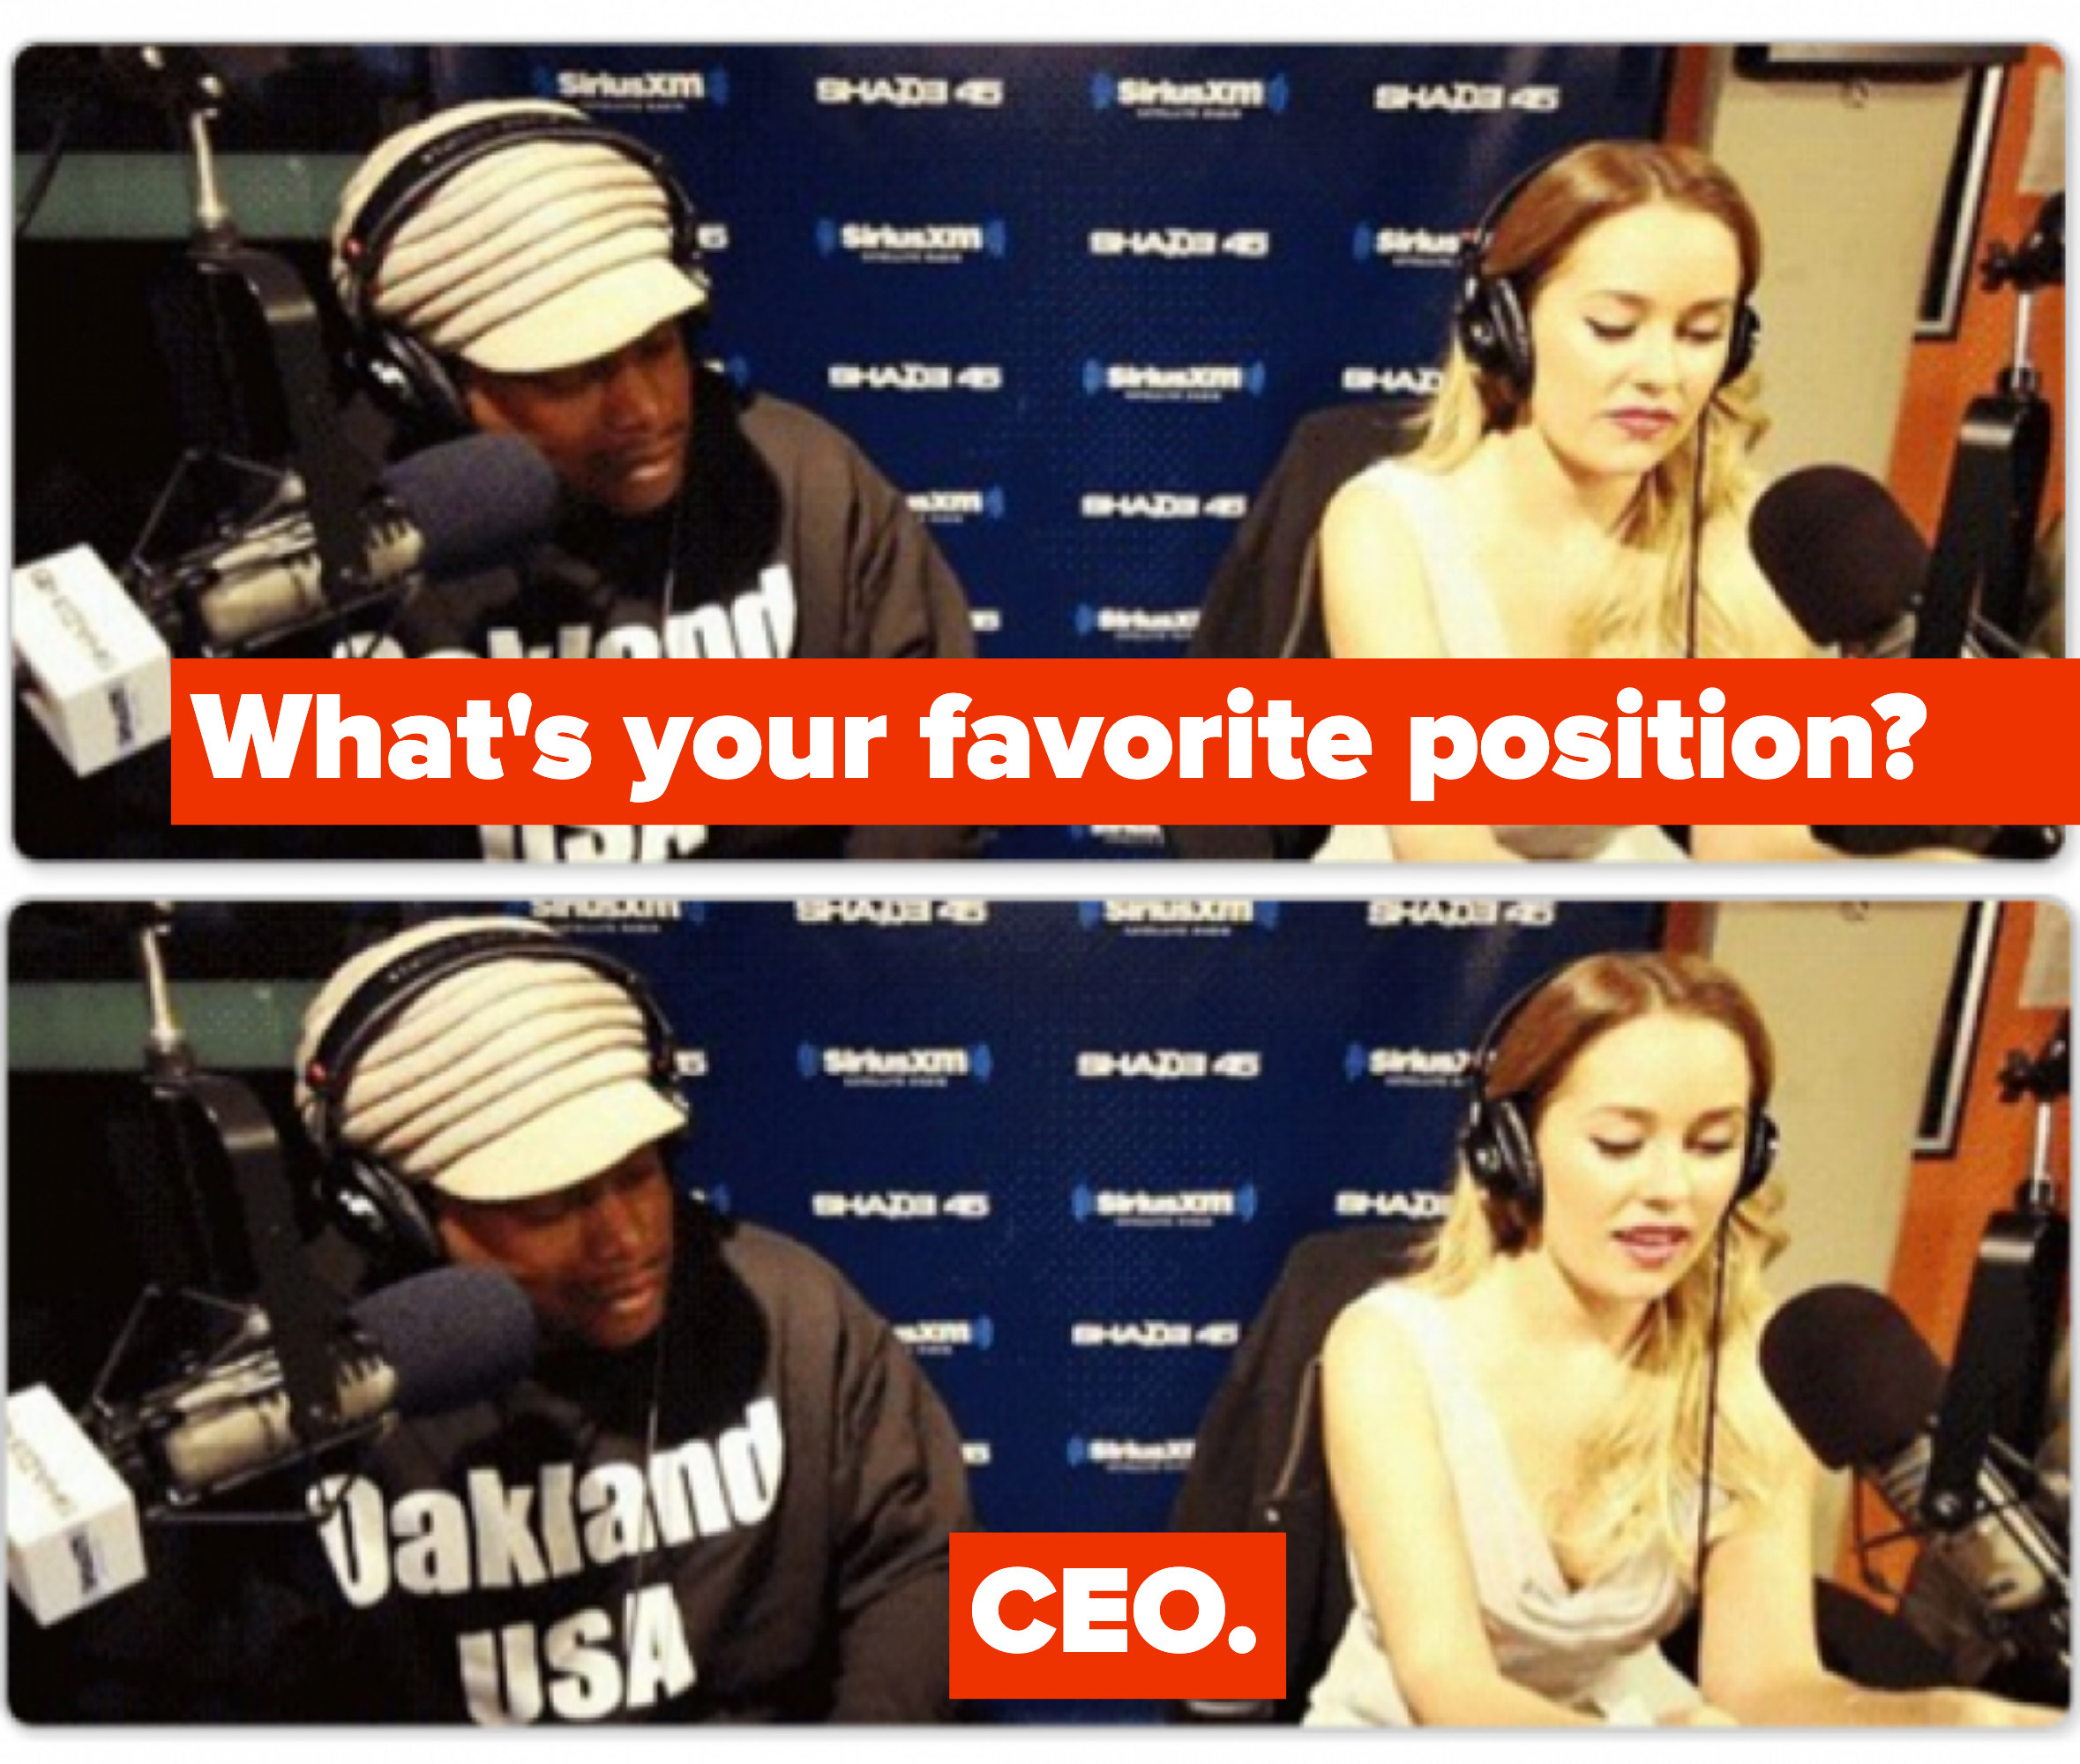 &quot;What&#x27;s your favorite position?&quot; &quot;CEO&quot;